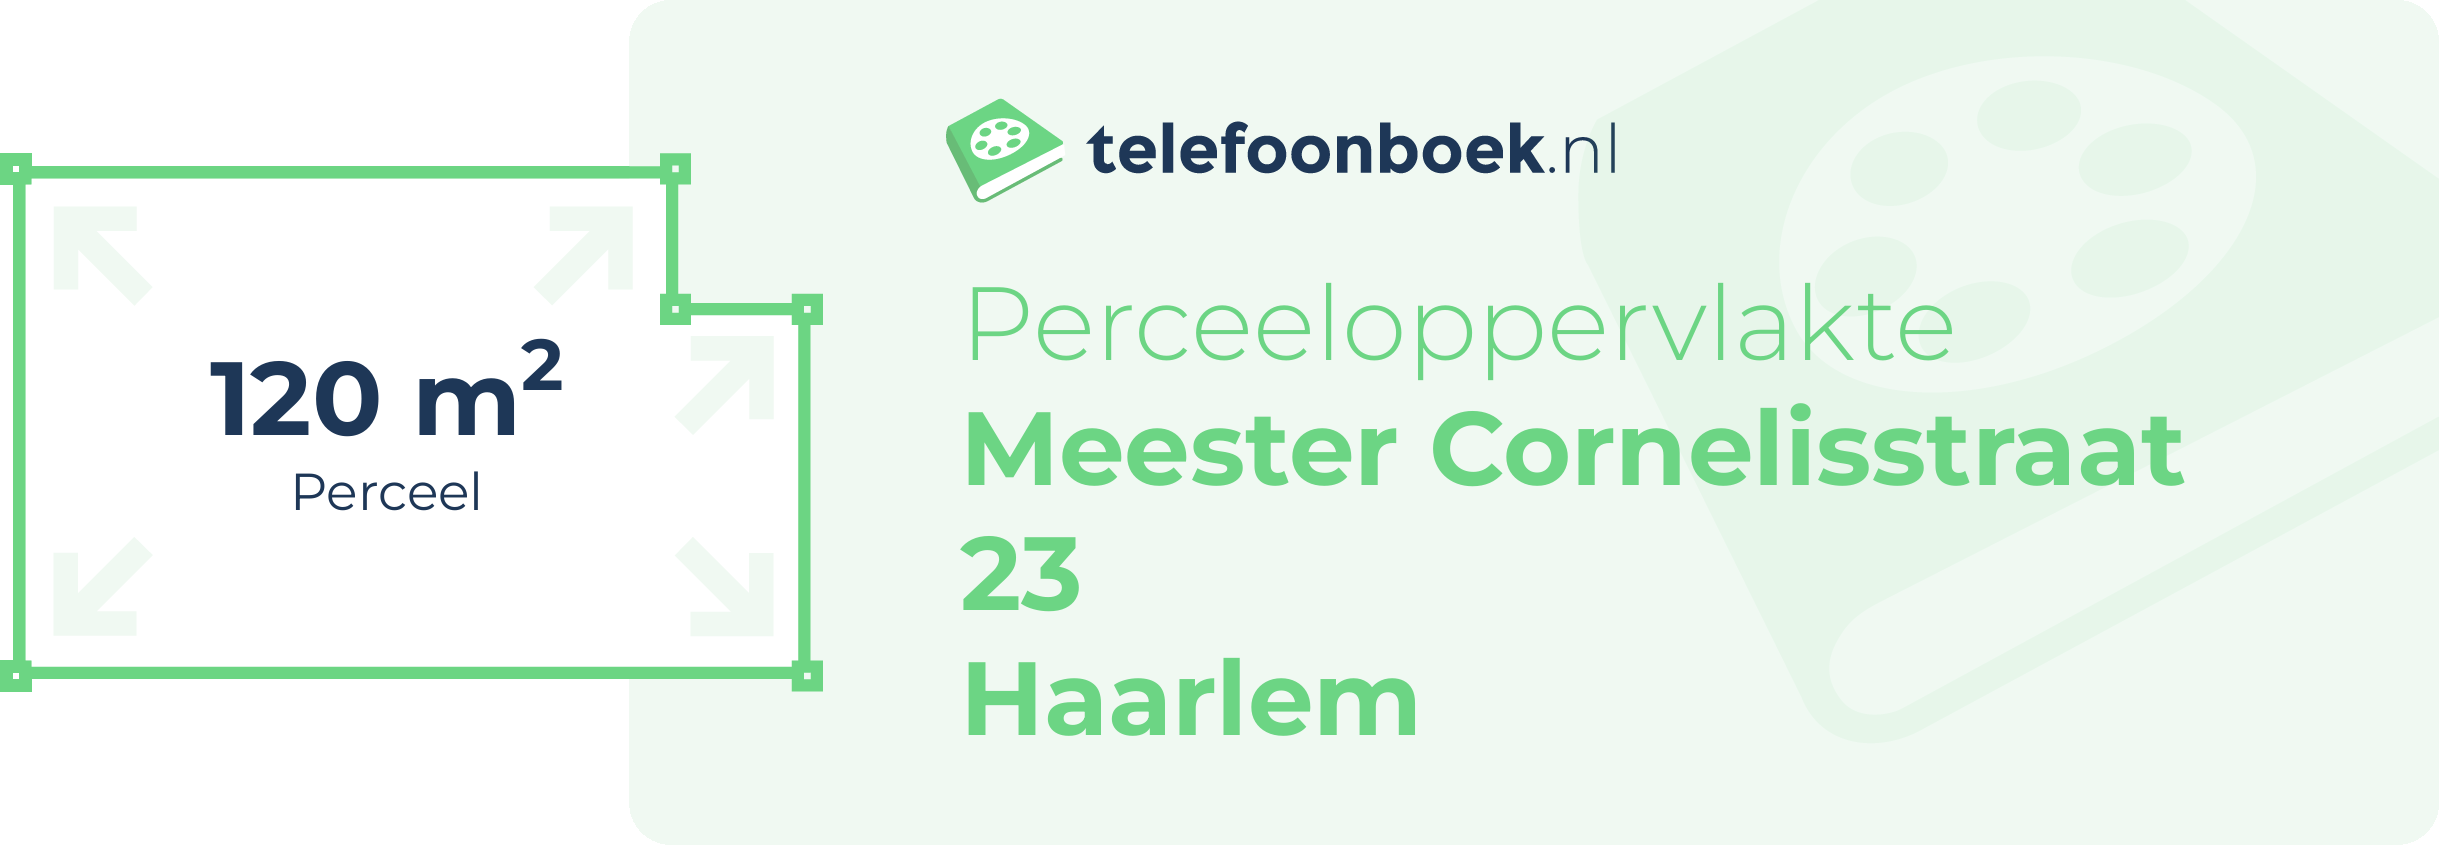 Perceeloppervlakte Meester Cornelisstraat 23 Haarlem